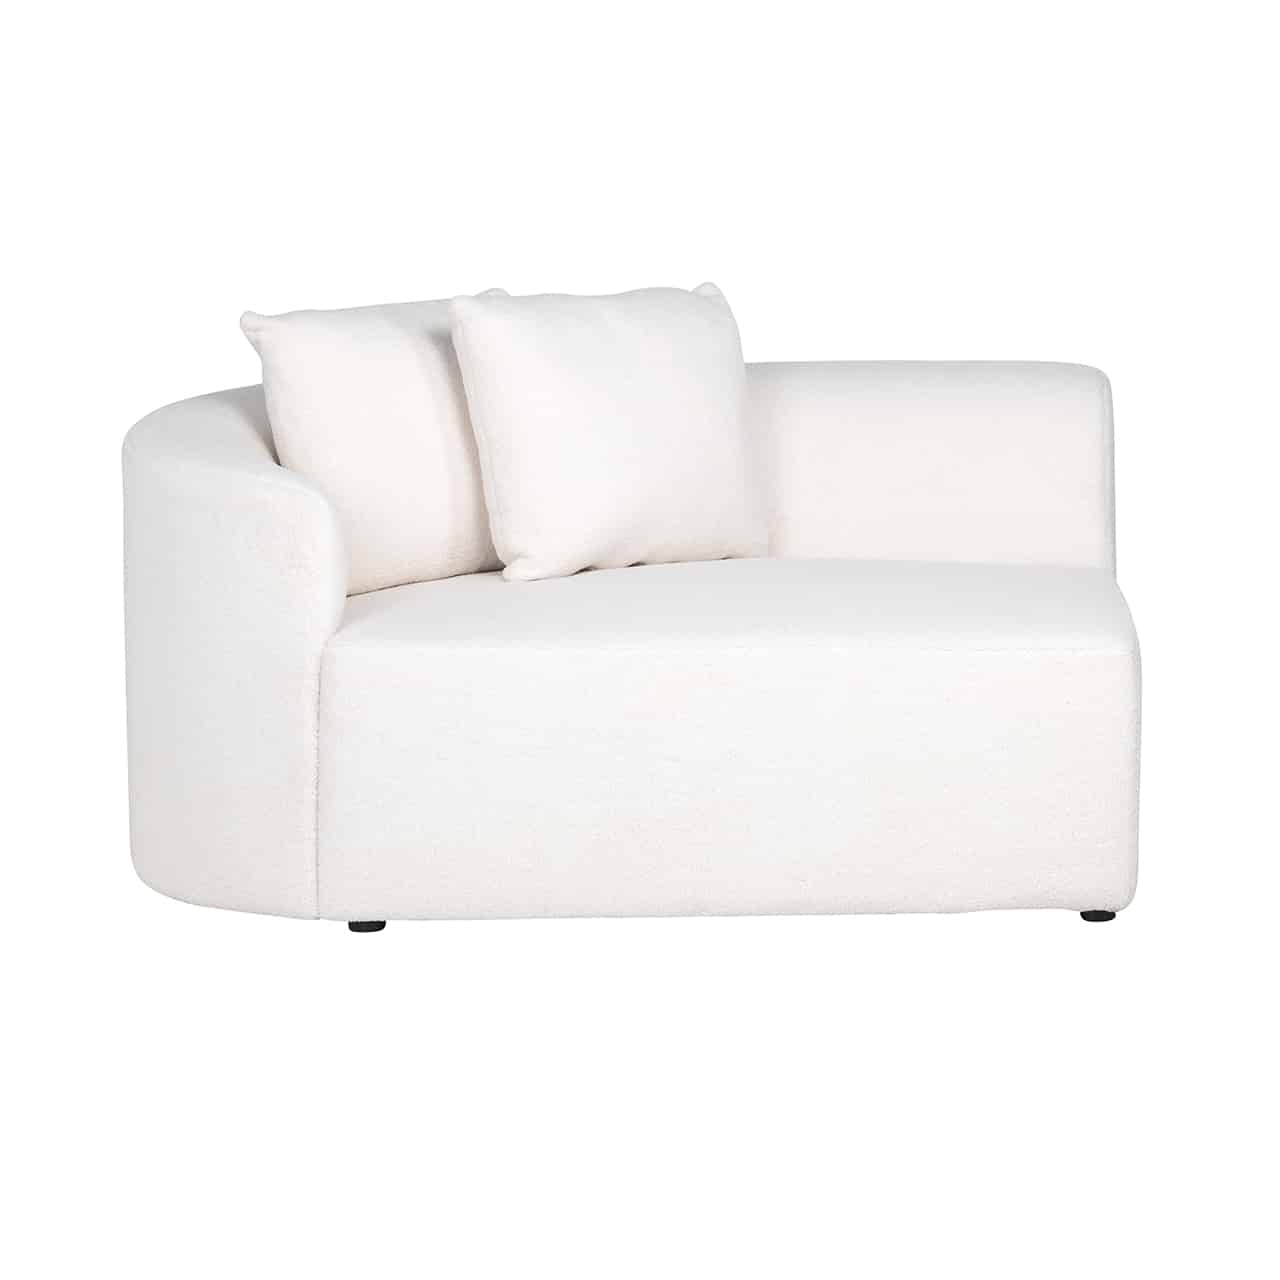 Eckmodul Arm links mit umlaufender, niedriger Lehne für eine weiße Couch, das Polster geht bis zum Boden; darauf zwei quadratische Kissen.